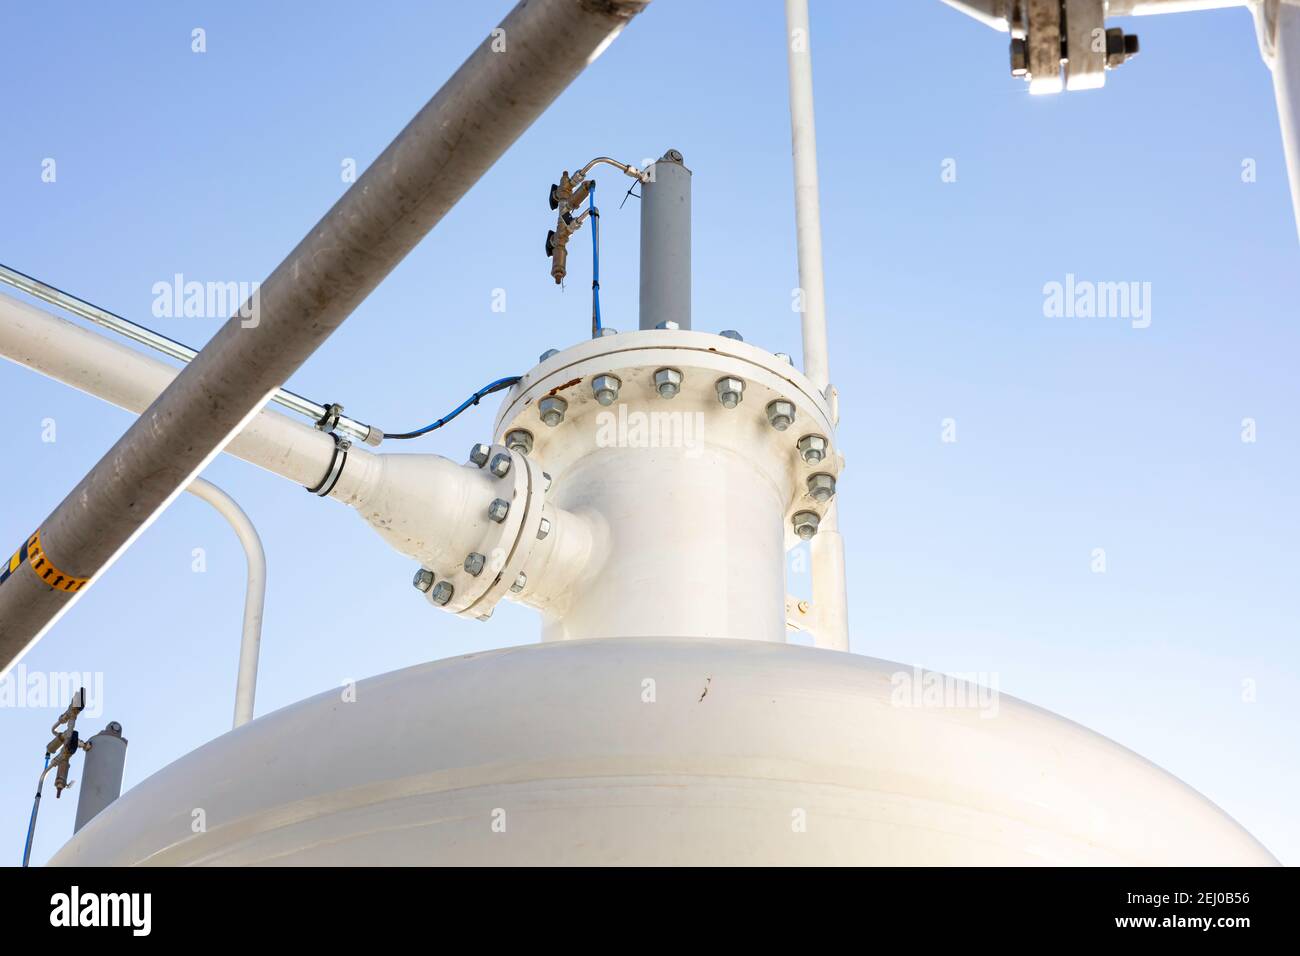 Industrieller Hintergrund mit Rohren, Verbindungen, Schrauben und Druckbehälter Farbe weiß mit blauem Himmel als Hintergrund Stockfoto